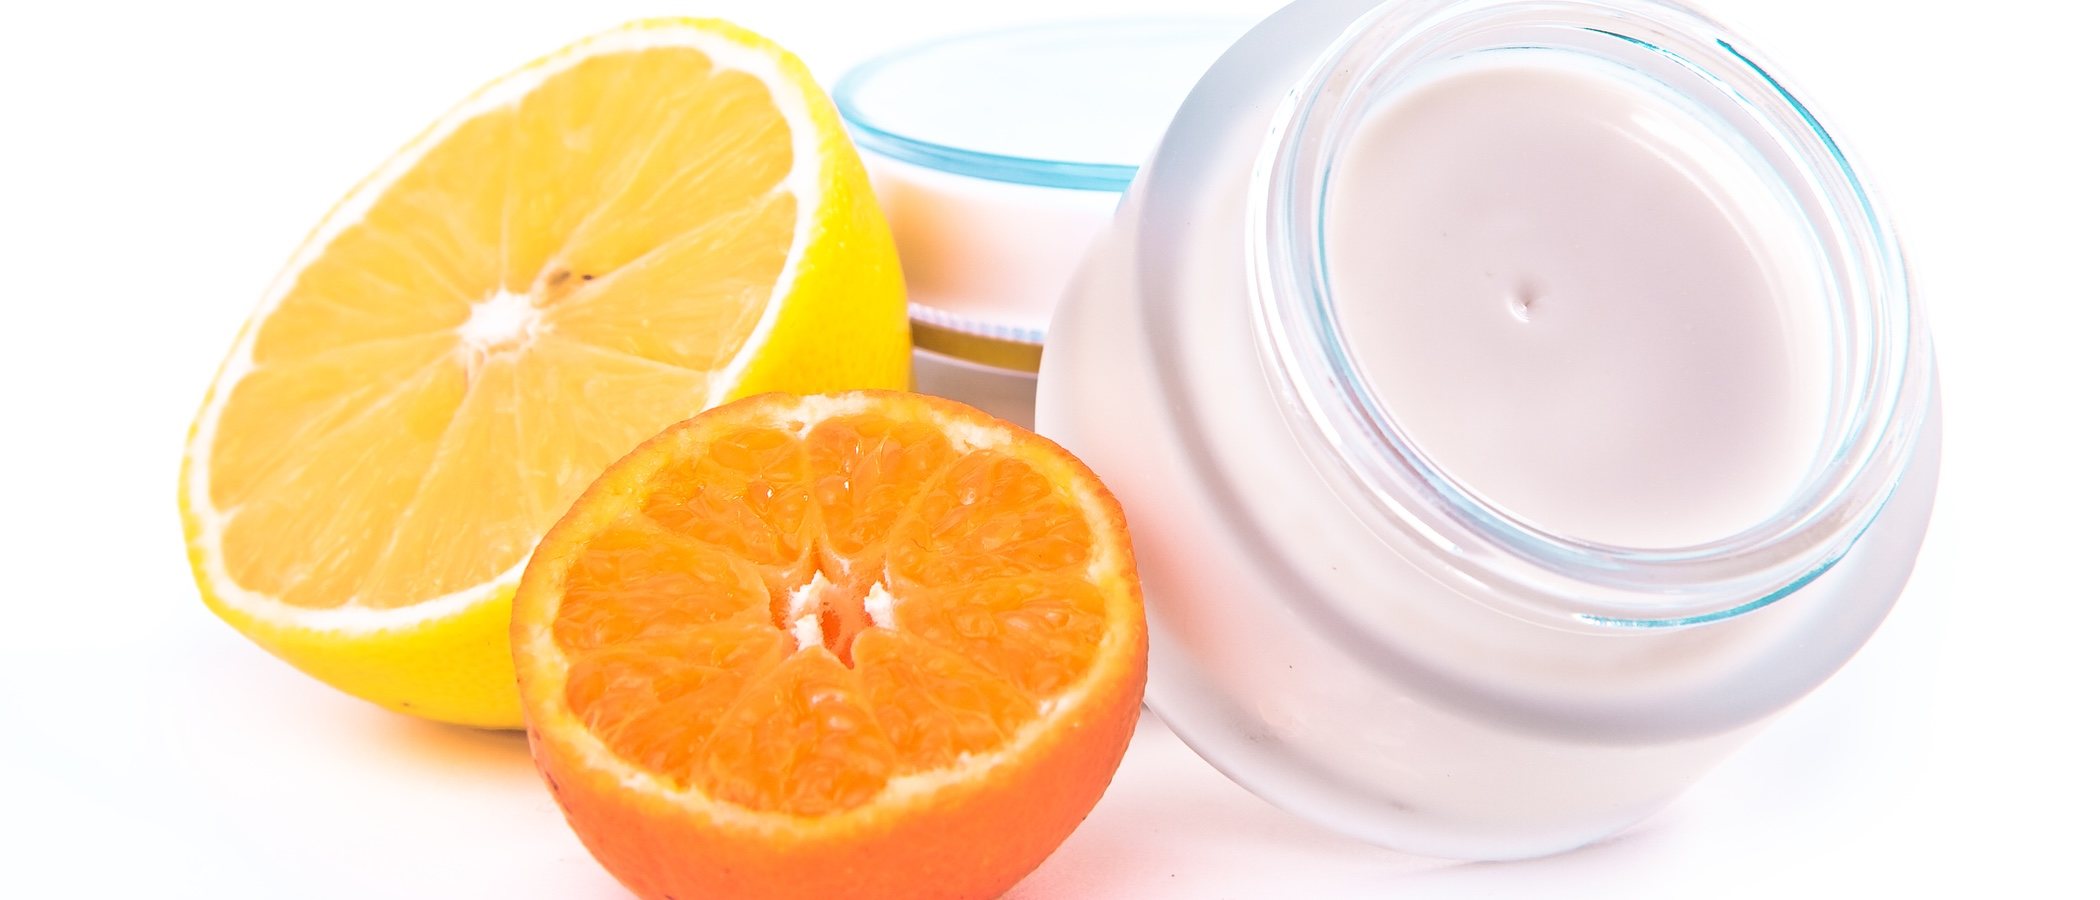 La importancia de la vitamina C para nuestra belleza